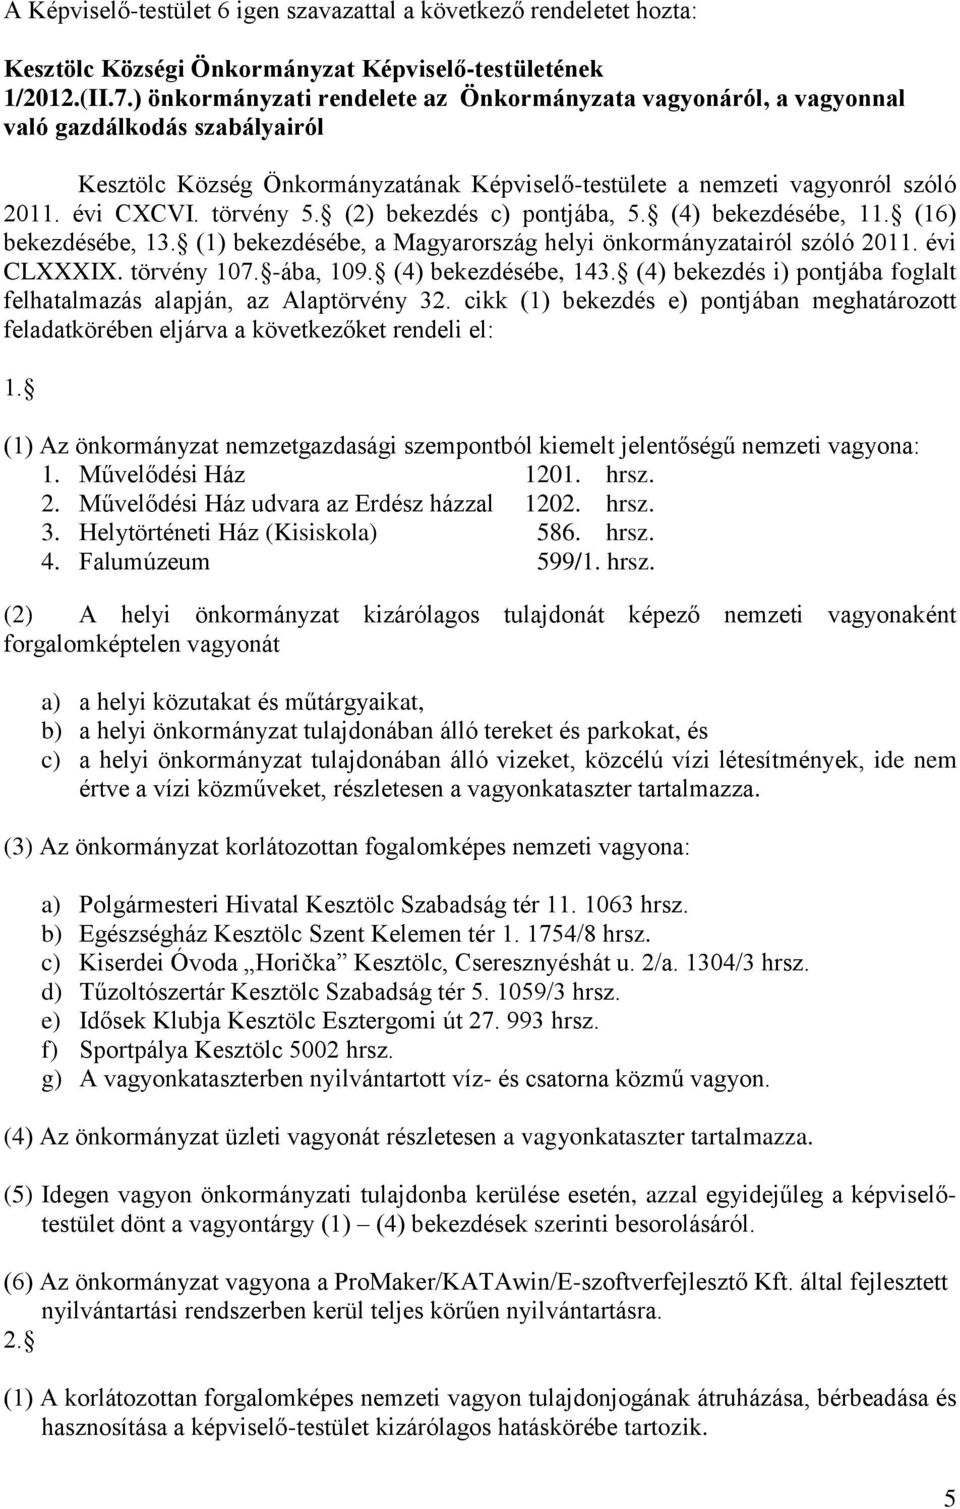 törvény 5. (2) bekezdés c) pontjába, 5. (4) bekezdésébe, 11. (16) bekezdésébe, 13. (1) bekezdésébe, a Magyarország helyi önkormányzatairól szóló 2011. évi CLXXXIX. törvény 107. -ába, 109.